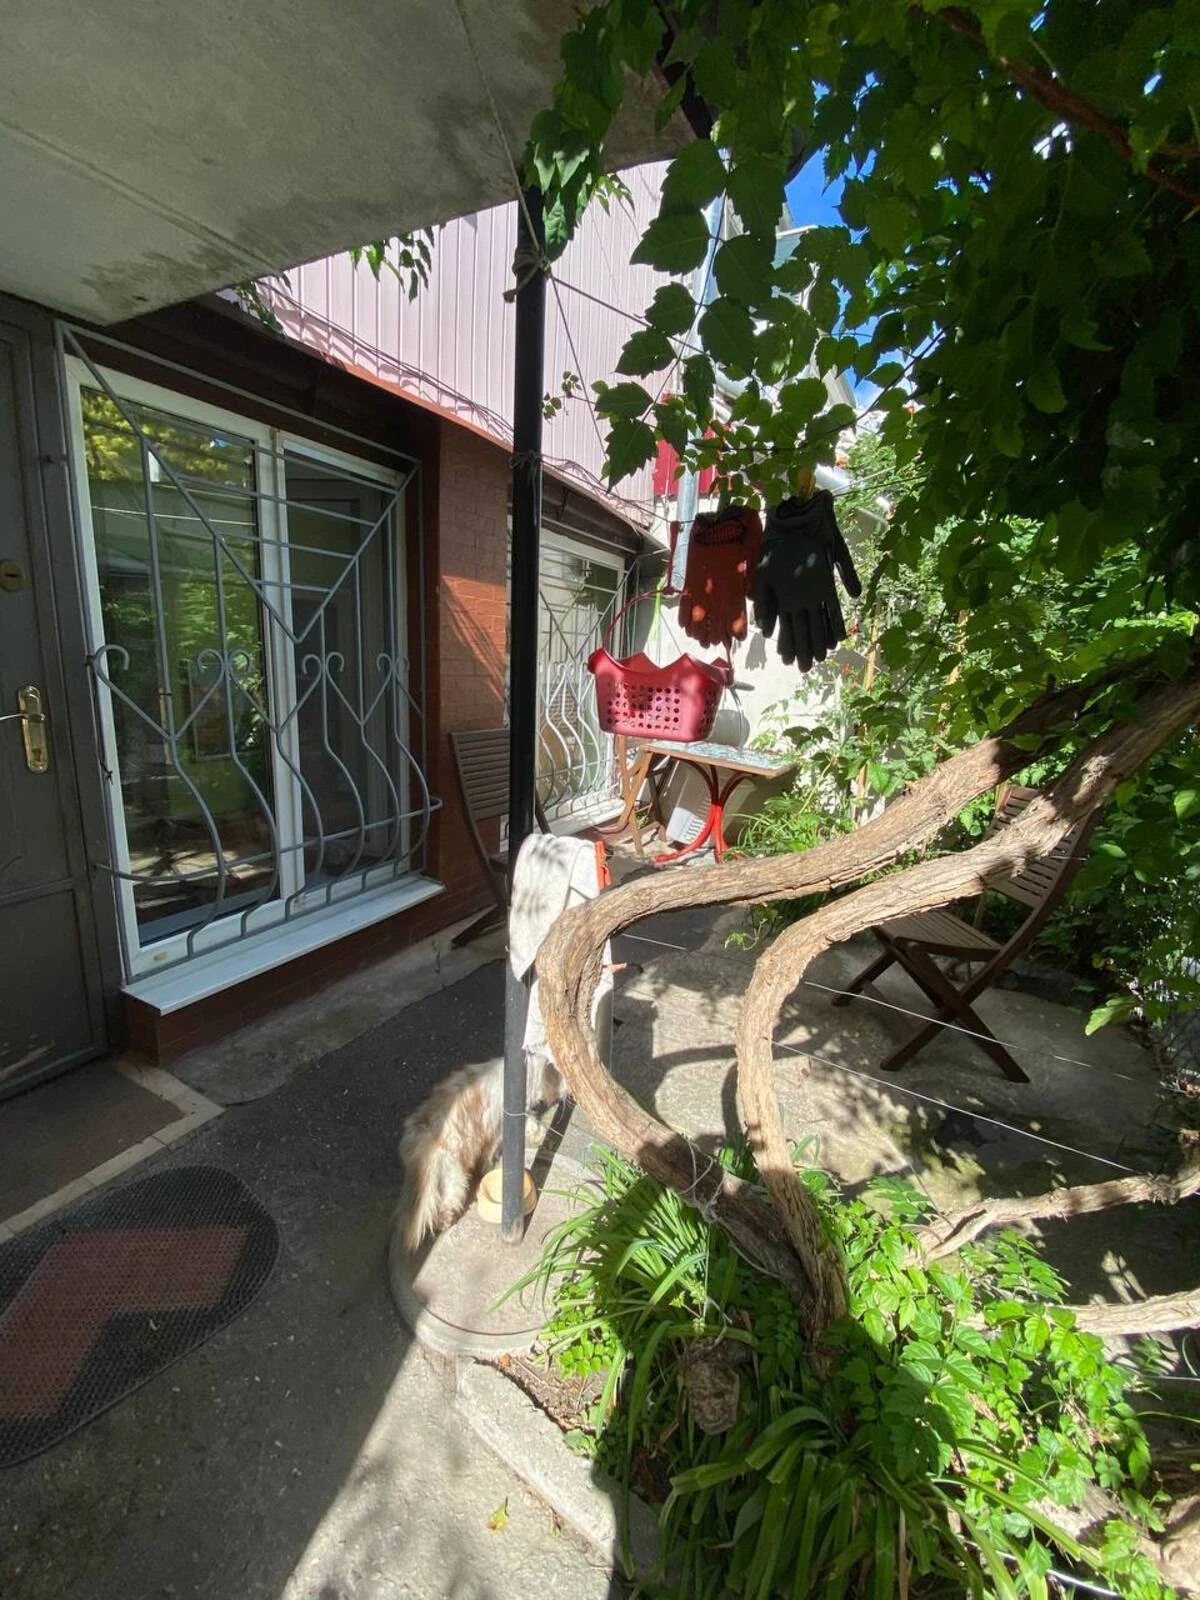 Трехкомнатная квартира со своим двориком на ул. Коблевская, в центре Одессы.